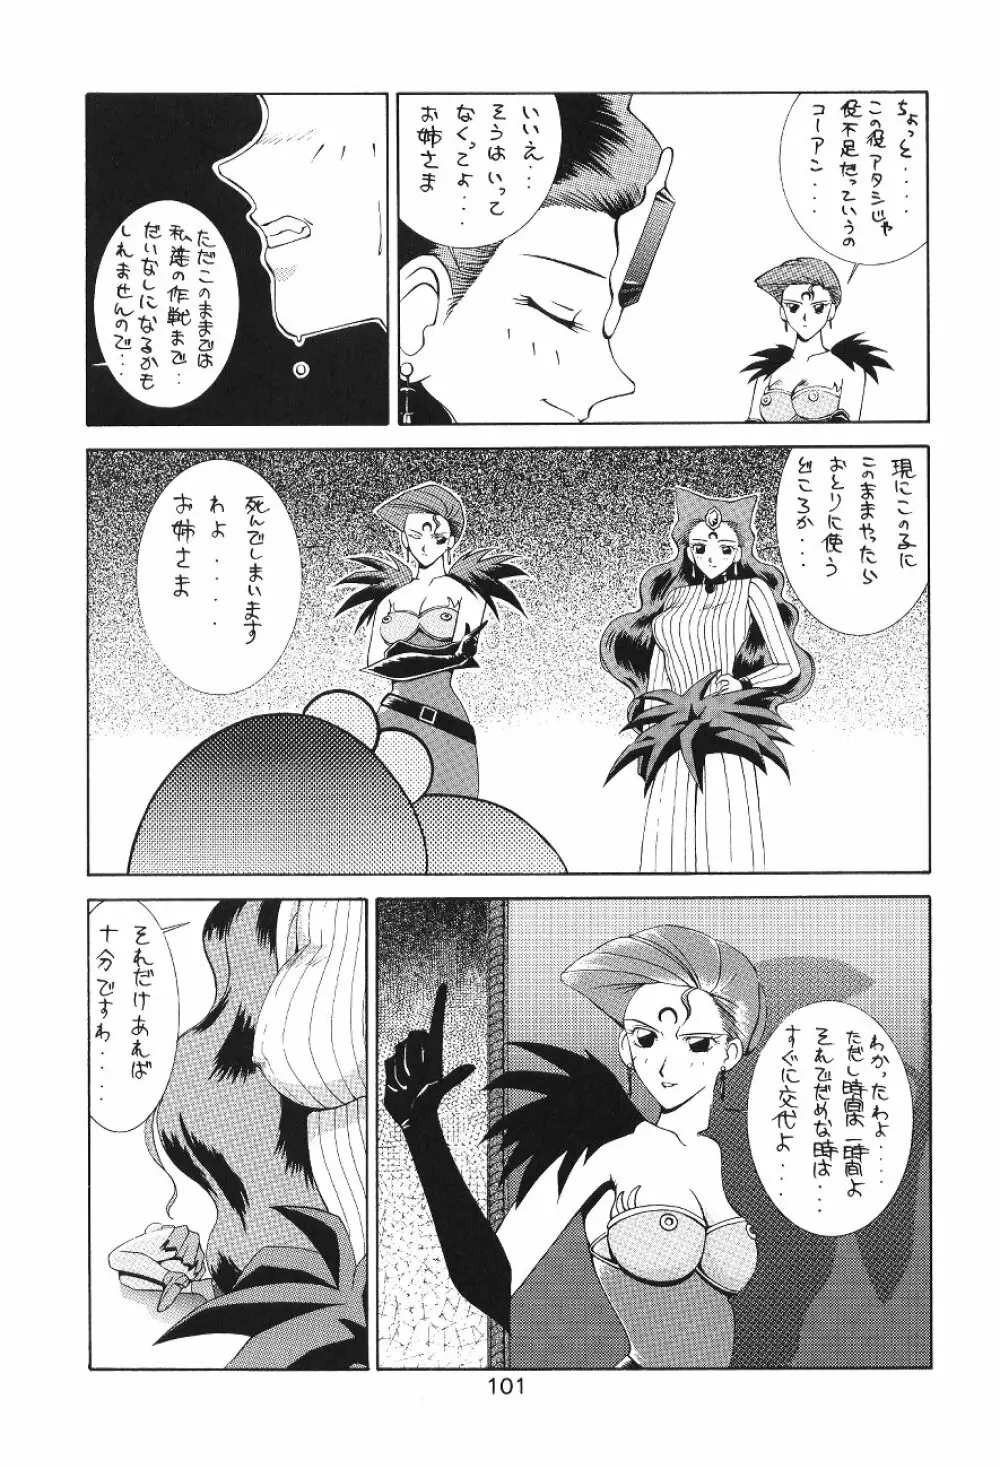 KATZE 7 上巻 - page102